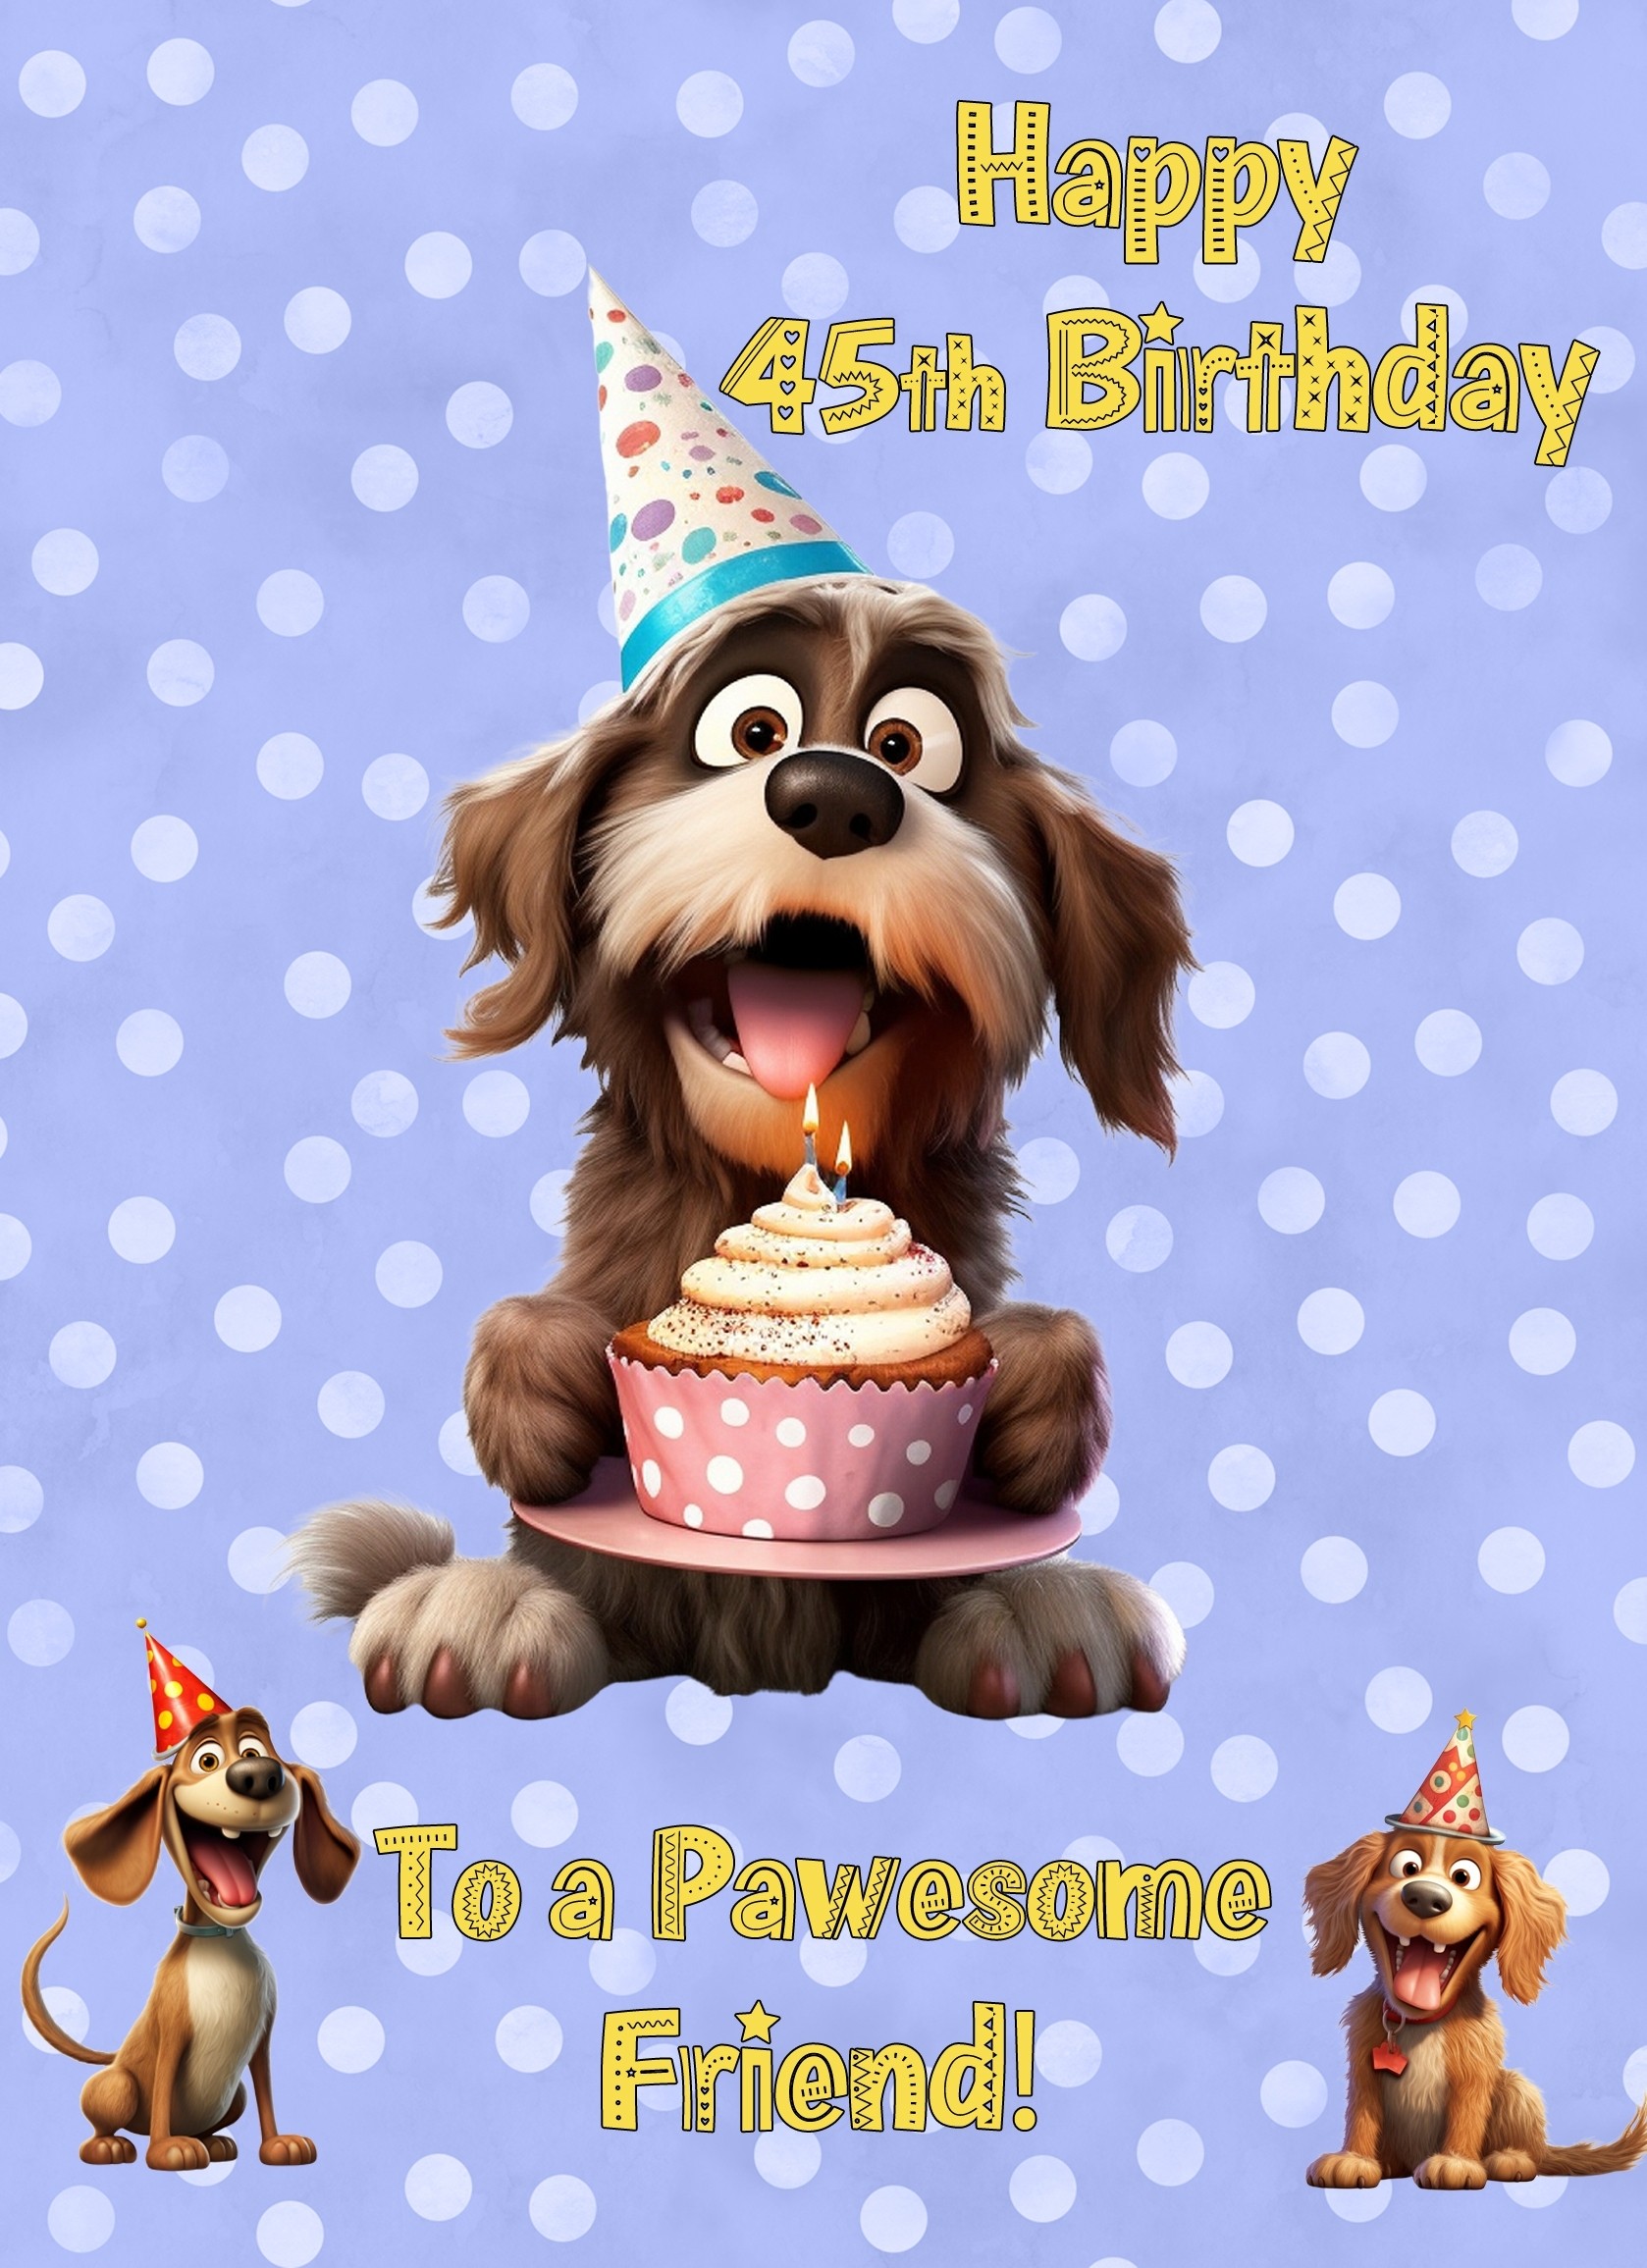 Friend 45th Birthday Card (Funny Dog Humour)